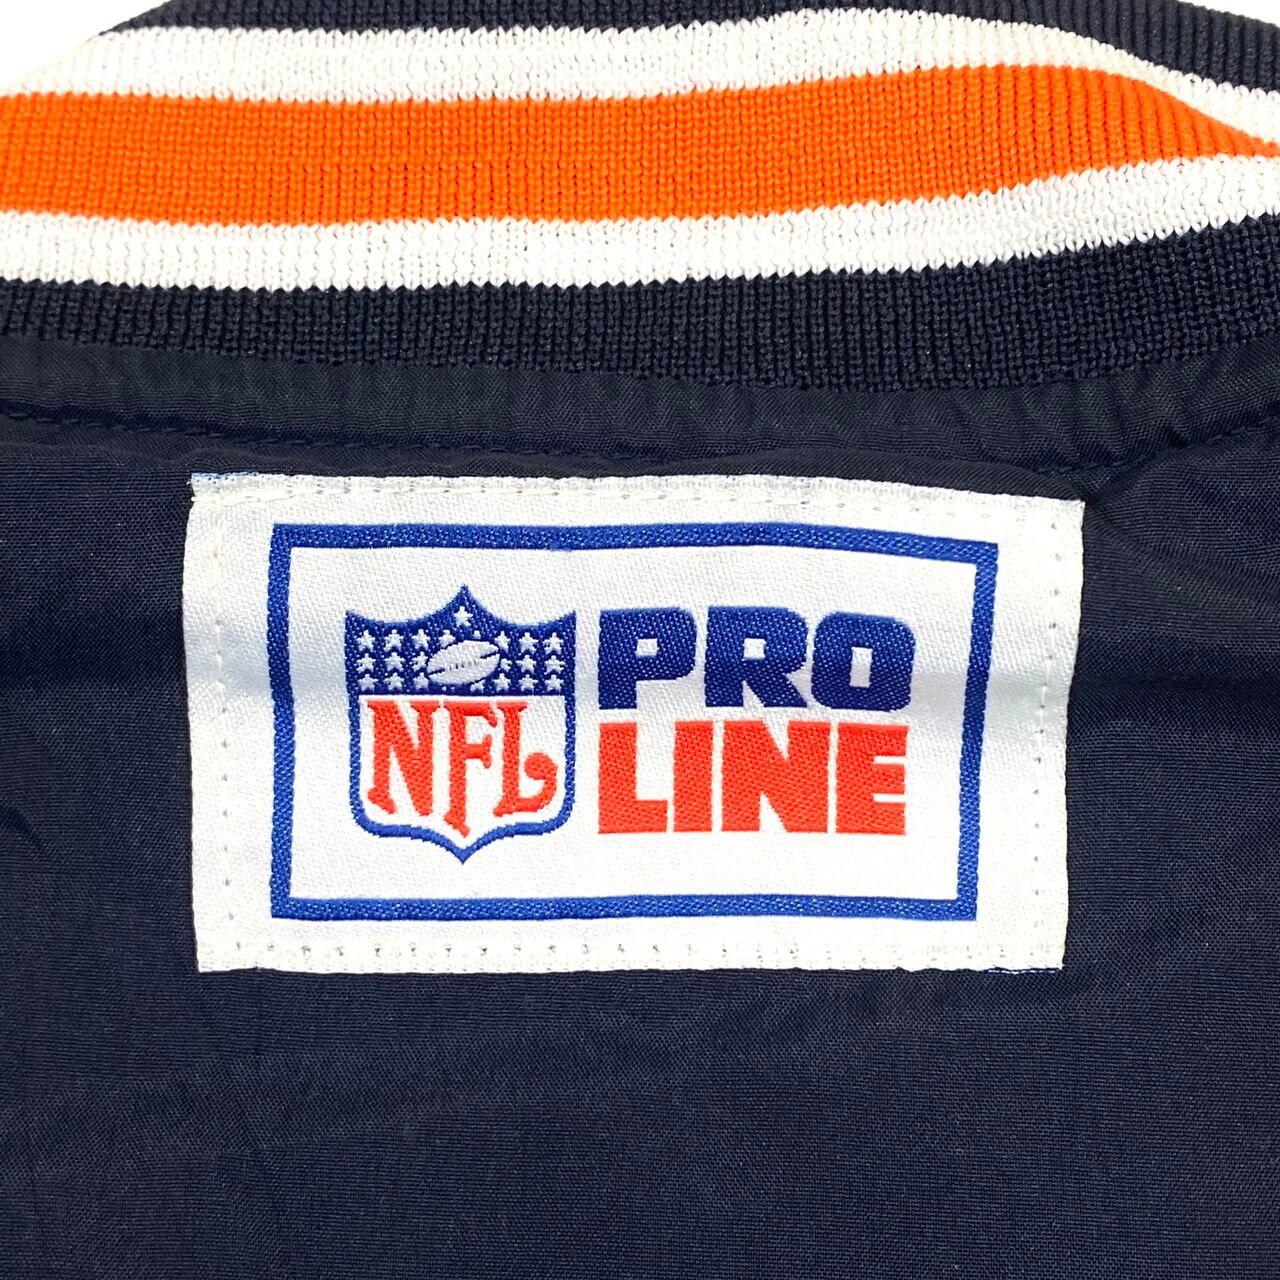 【激レア】90s リーボック NFL プロライン プルオーバー ジャケット 刺繍